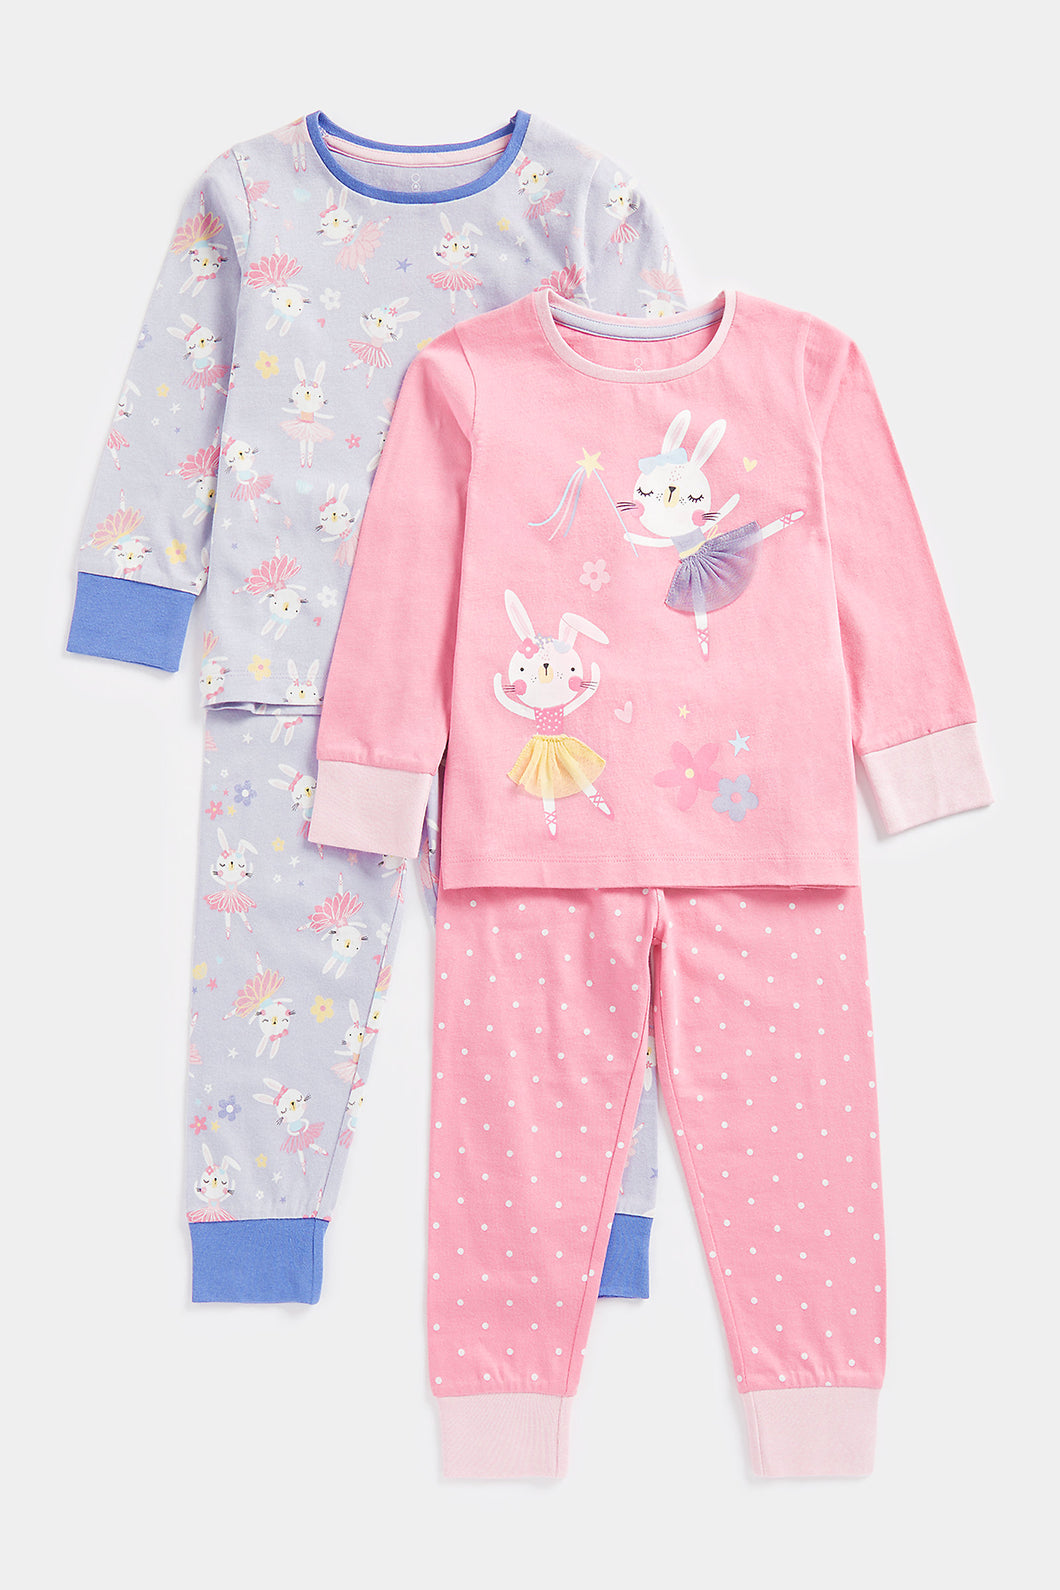 Mothercare Ballerina Bunny Pyjamas - 2 Pack